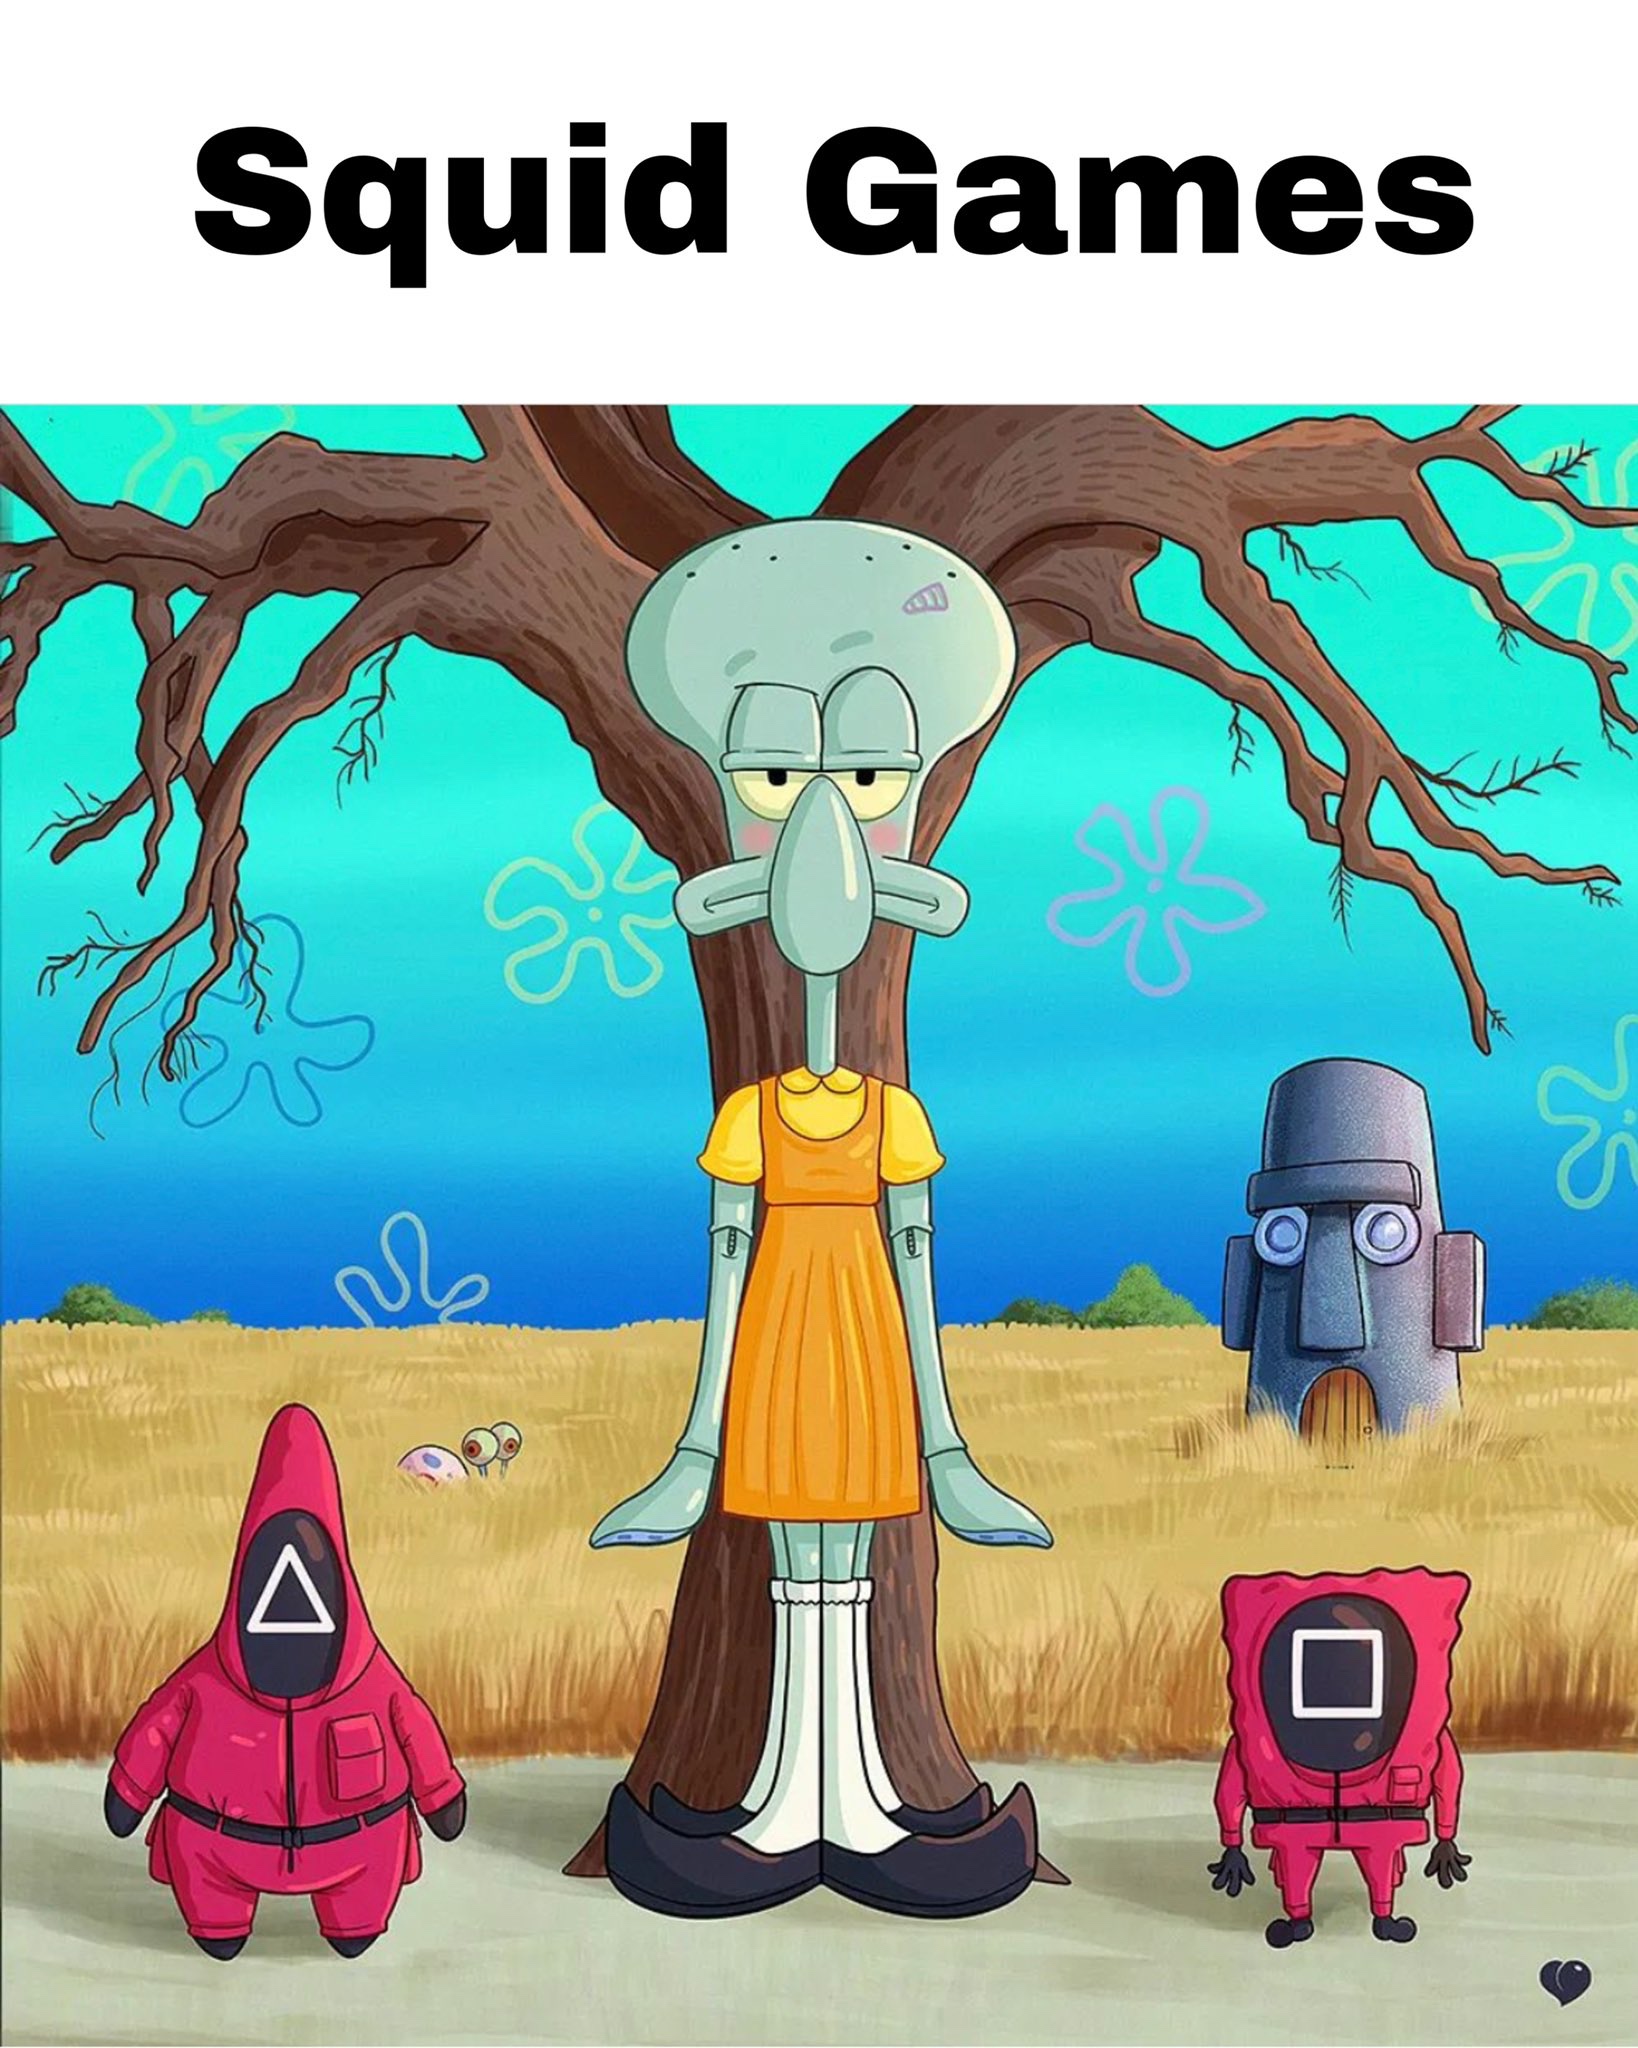 Squid Games Squidward Spongebob Squarepants meme